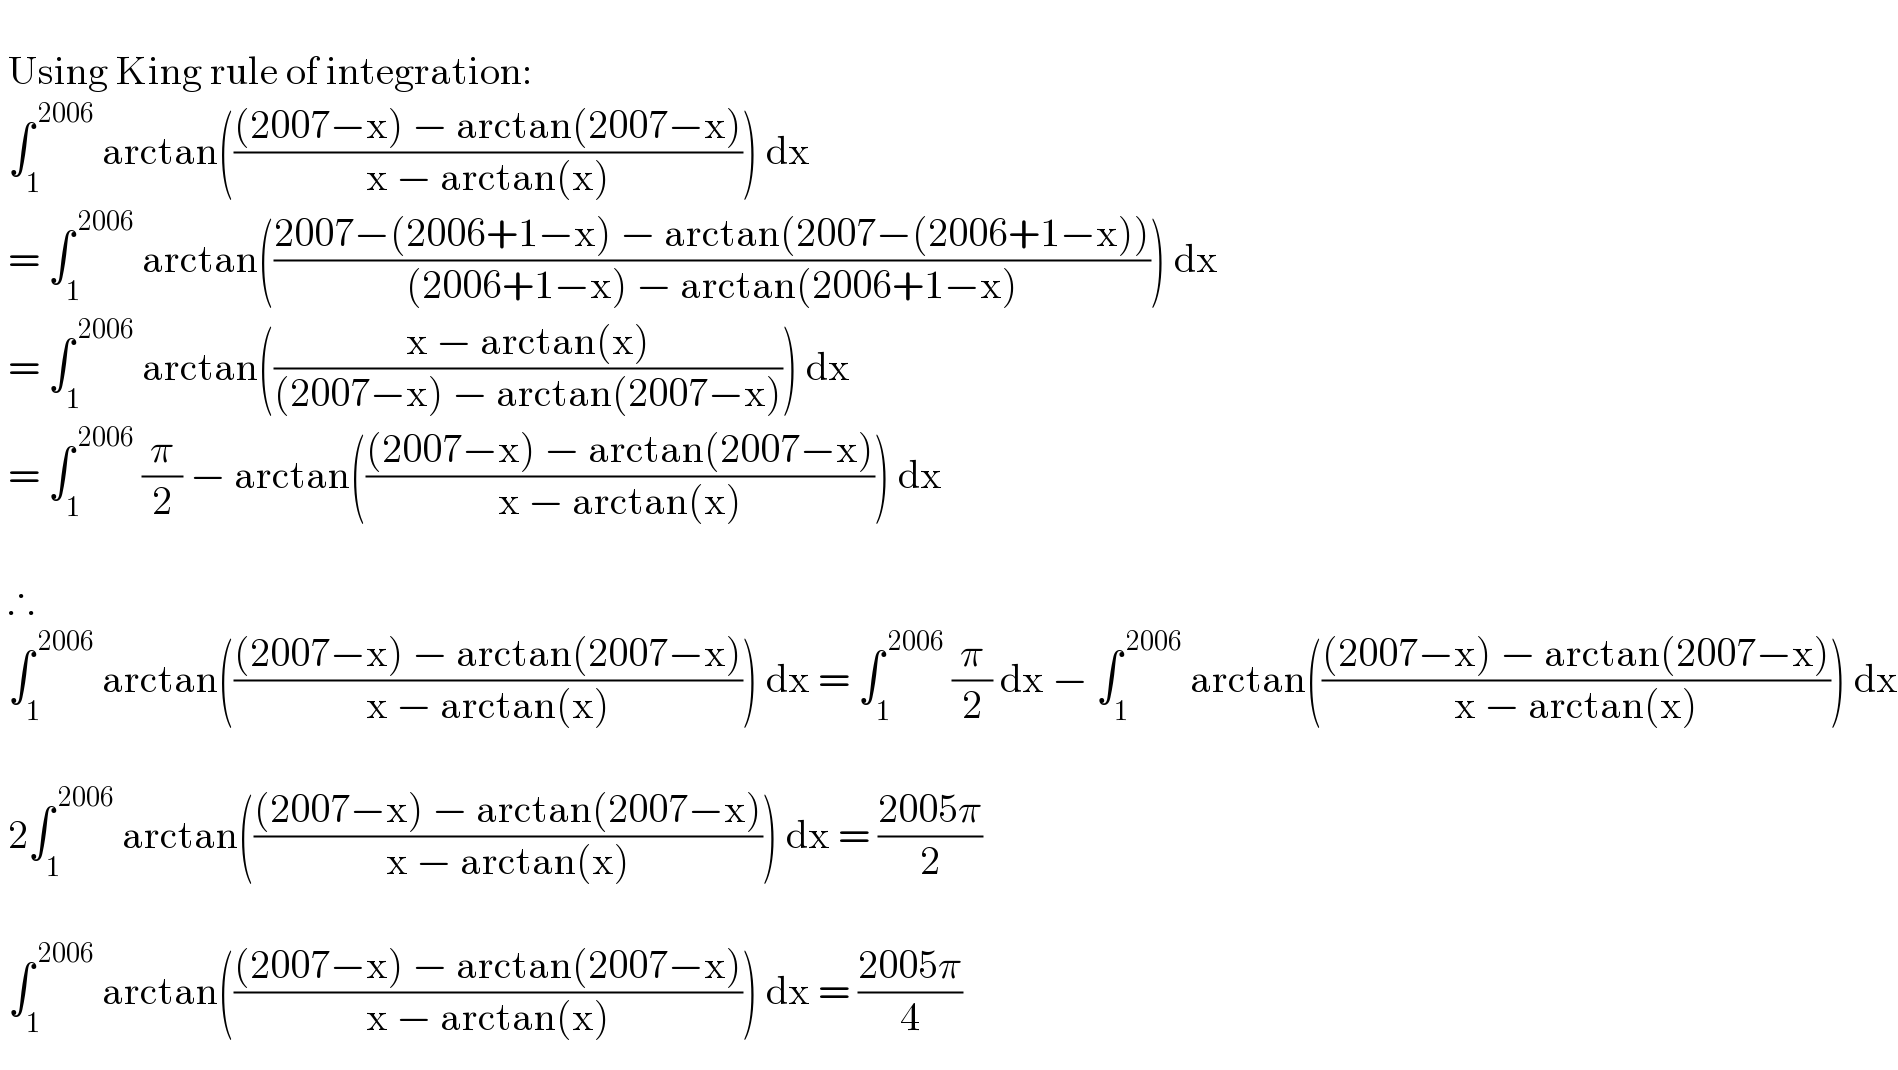     Using King rule of integration:   ∫_1 ^( 2006)  arctan((((2007−x) − arctan(2007−x))/(x − arctan(x)))) dx   = ∫_1 ^( 2006)  arctan(((2007−(2006+1−x) − arctan(2007−(2006+1−x)))/((2006+1−x) − arctan(2006+1−x)))) dx   = ∫_1 ^( 2006)  arctan(((x − arctan(x))/((2007−x) − arctan(2007−x)))) dx   = ∫_1 ^( 2006)  (π/2) − arctan((((2007−x) − arctan(2007−x))/(x − arctan(x)))) dx      ∴   ∫_1 ^( 2006)  arctan((((2007−x) − arctan(2007−x))/(x − arctan(x)))) dx = ∫_1 ^( 2006)  (π/2) dx − ∫_1 ^( 2006)  arctan((((2007−x) − arctan(2007−x))/(x − arctan(x)))) dx      2∫_1 ^( 2006)  arctan((((2007−x) − arctan(2007−x))/(x − arctan(x)))) dx = ((2005π)/2)      ∫_1 ^( 2006)  arctan((((2007−x) − arctan(2007−x))/(x − arctan(x)))) dx = ((2005π)/4)  